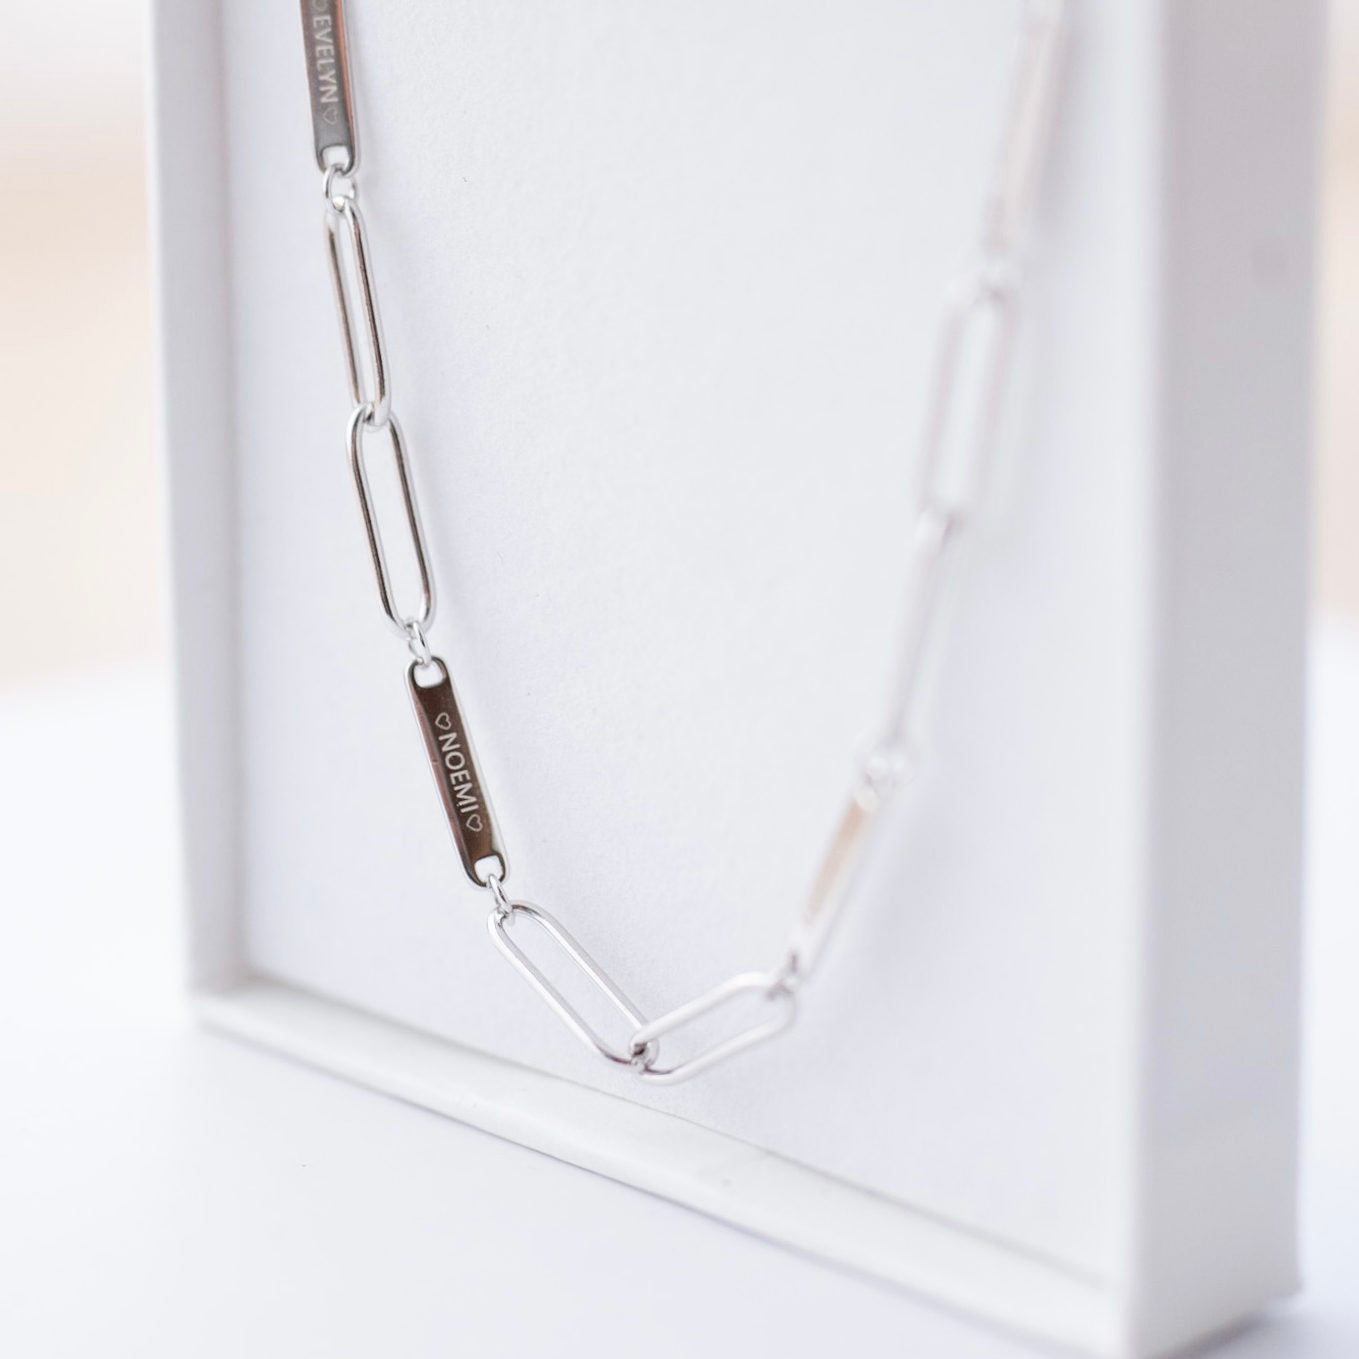 Family Chain Necklace Silver | Kette für €64.99 von So Loved Manufacture